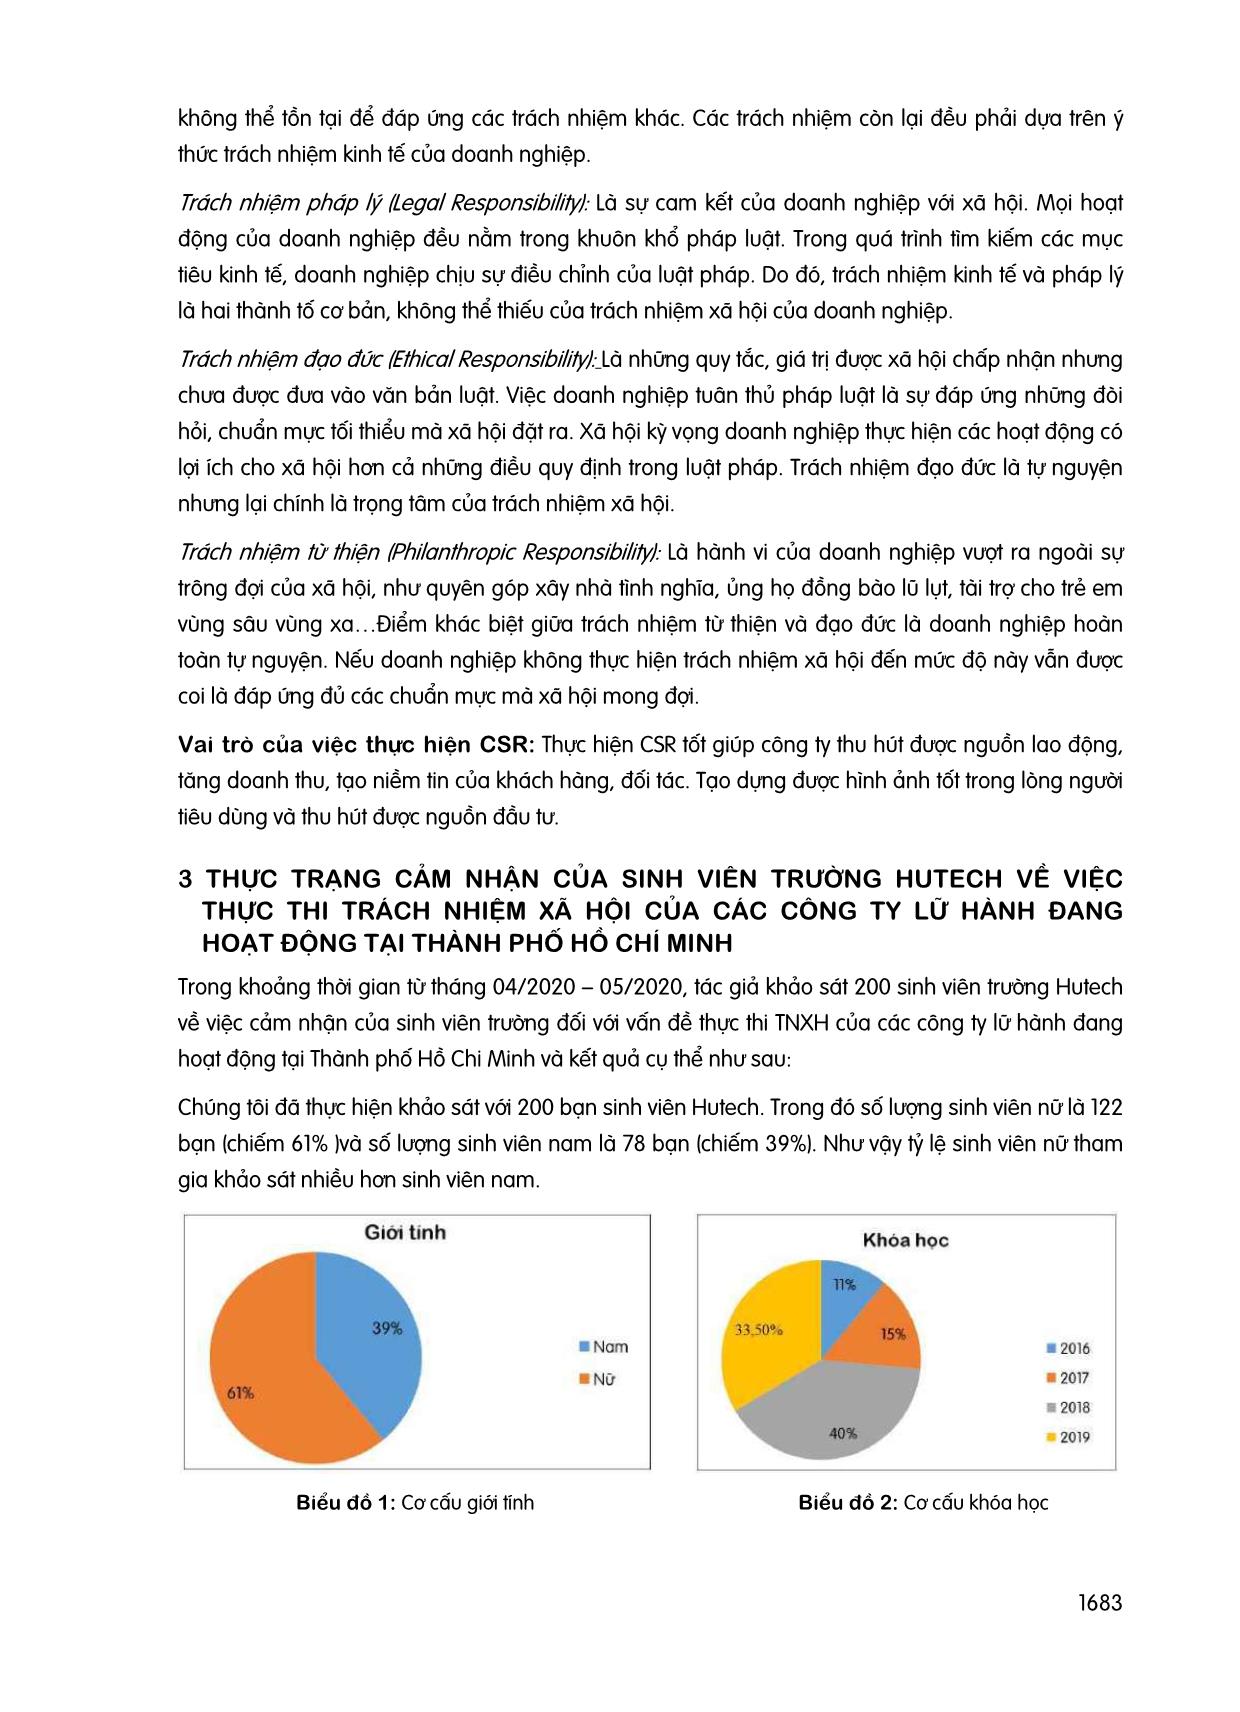 Đánh giá cảm nhận của sinh viên trường HUTECH về việc thực thi trách nhiệm xã hội (CSR) của các công ty lữ hành tại thành phố Hồ Chí Minh trang 3